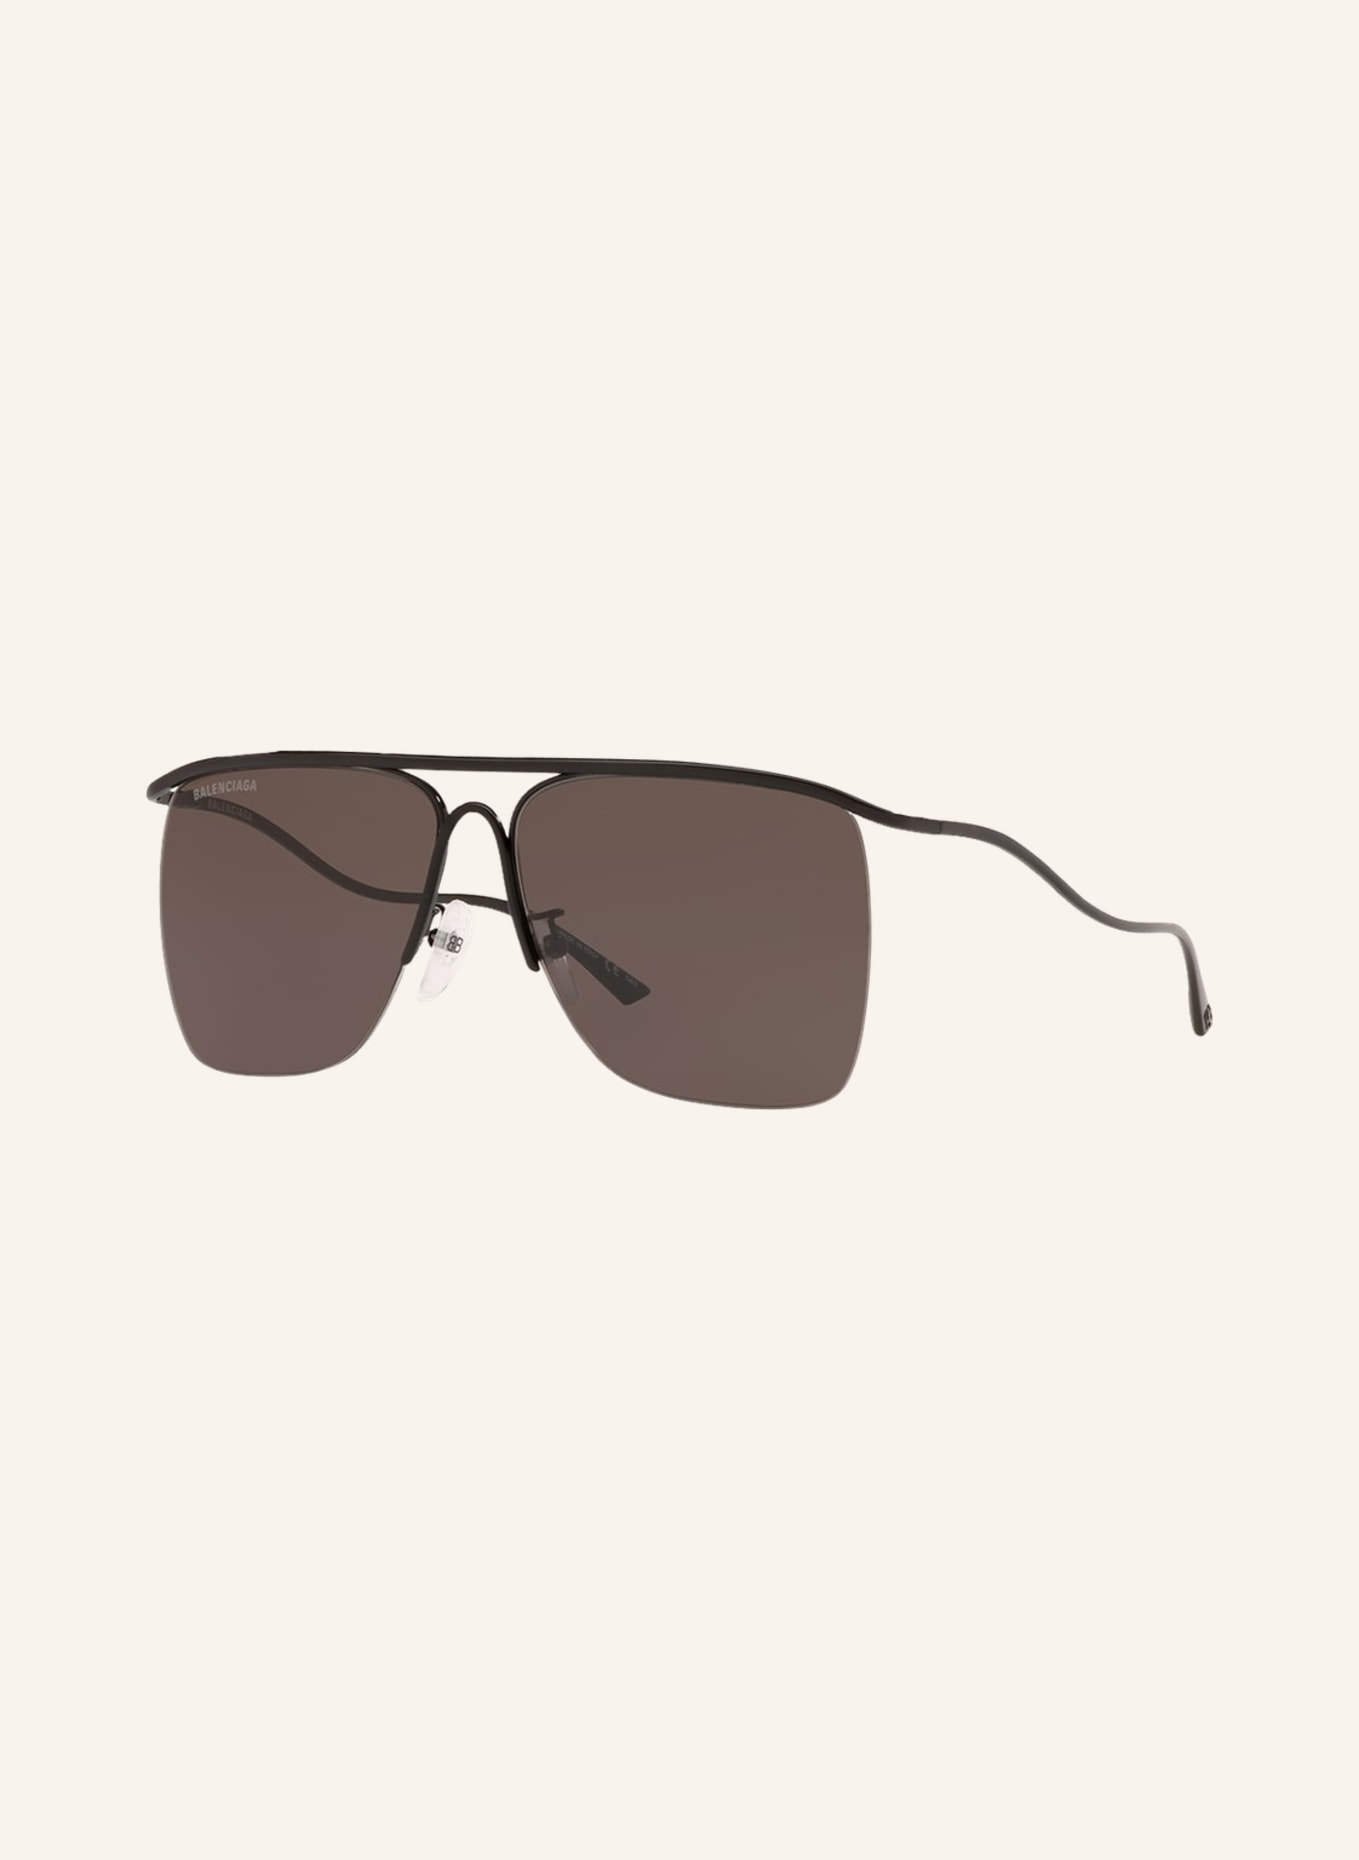 BALENCIAGA Sunglasses BB0092S, Color: 1330L1 - BLACK/DARK GRAY (Image 1)